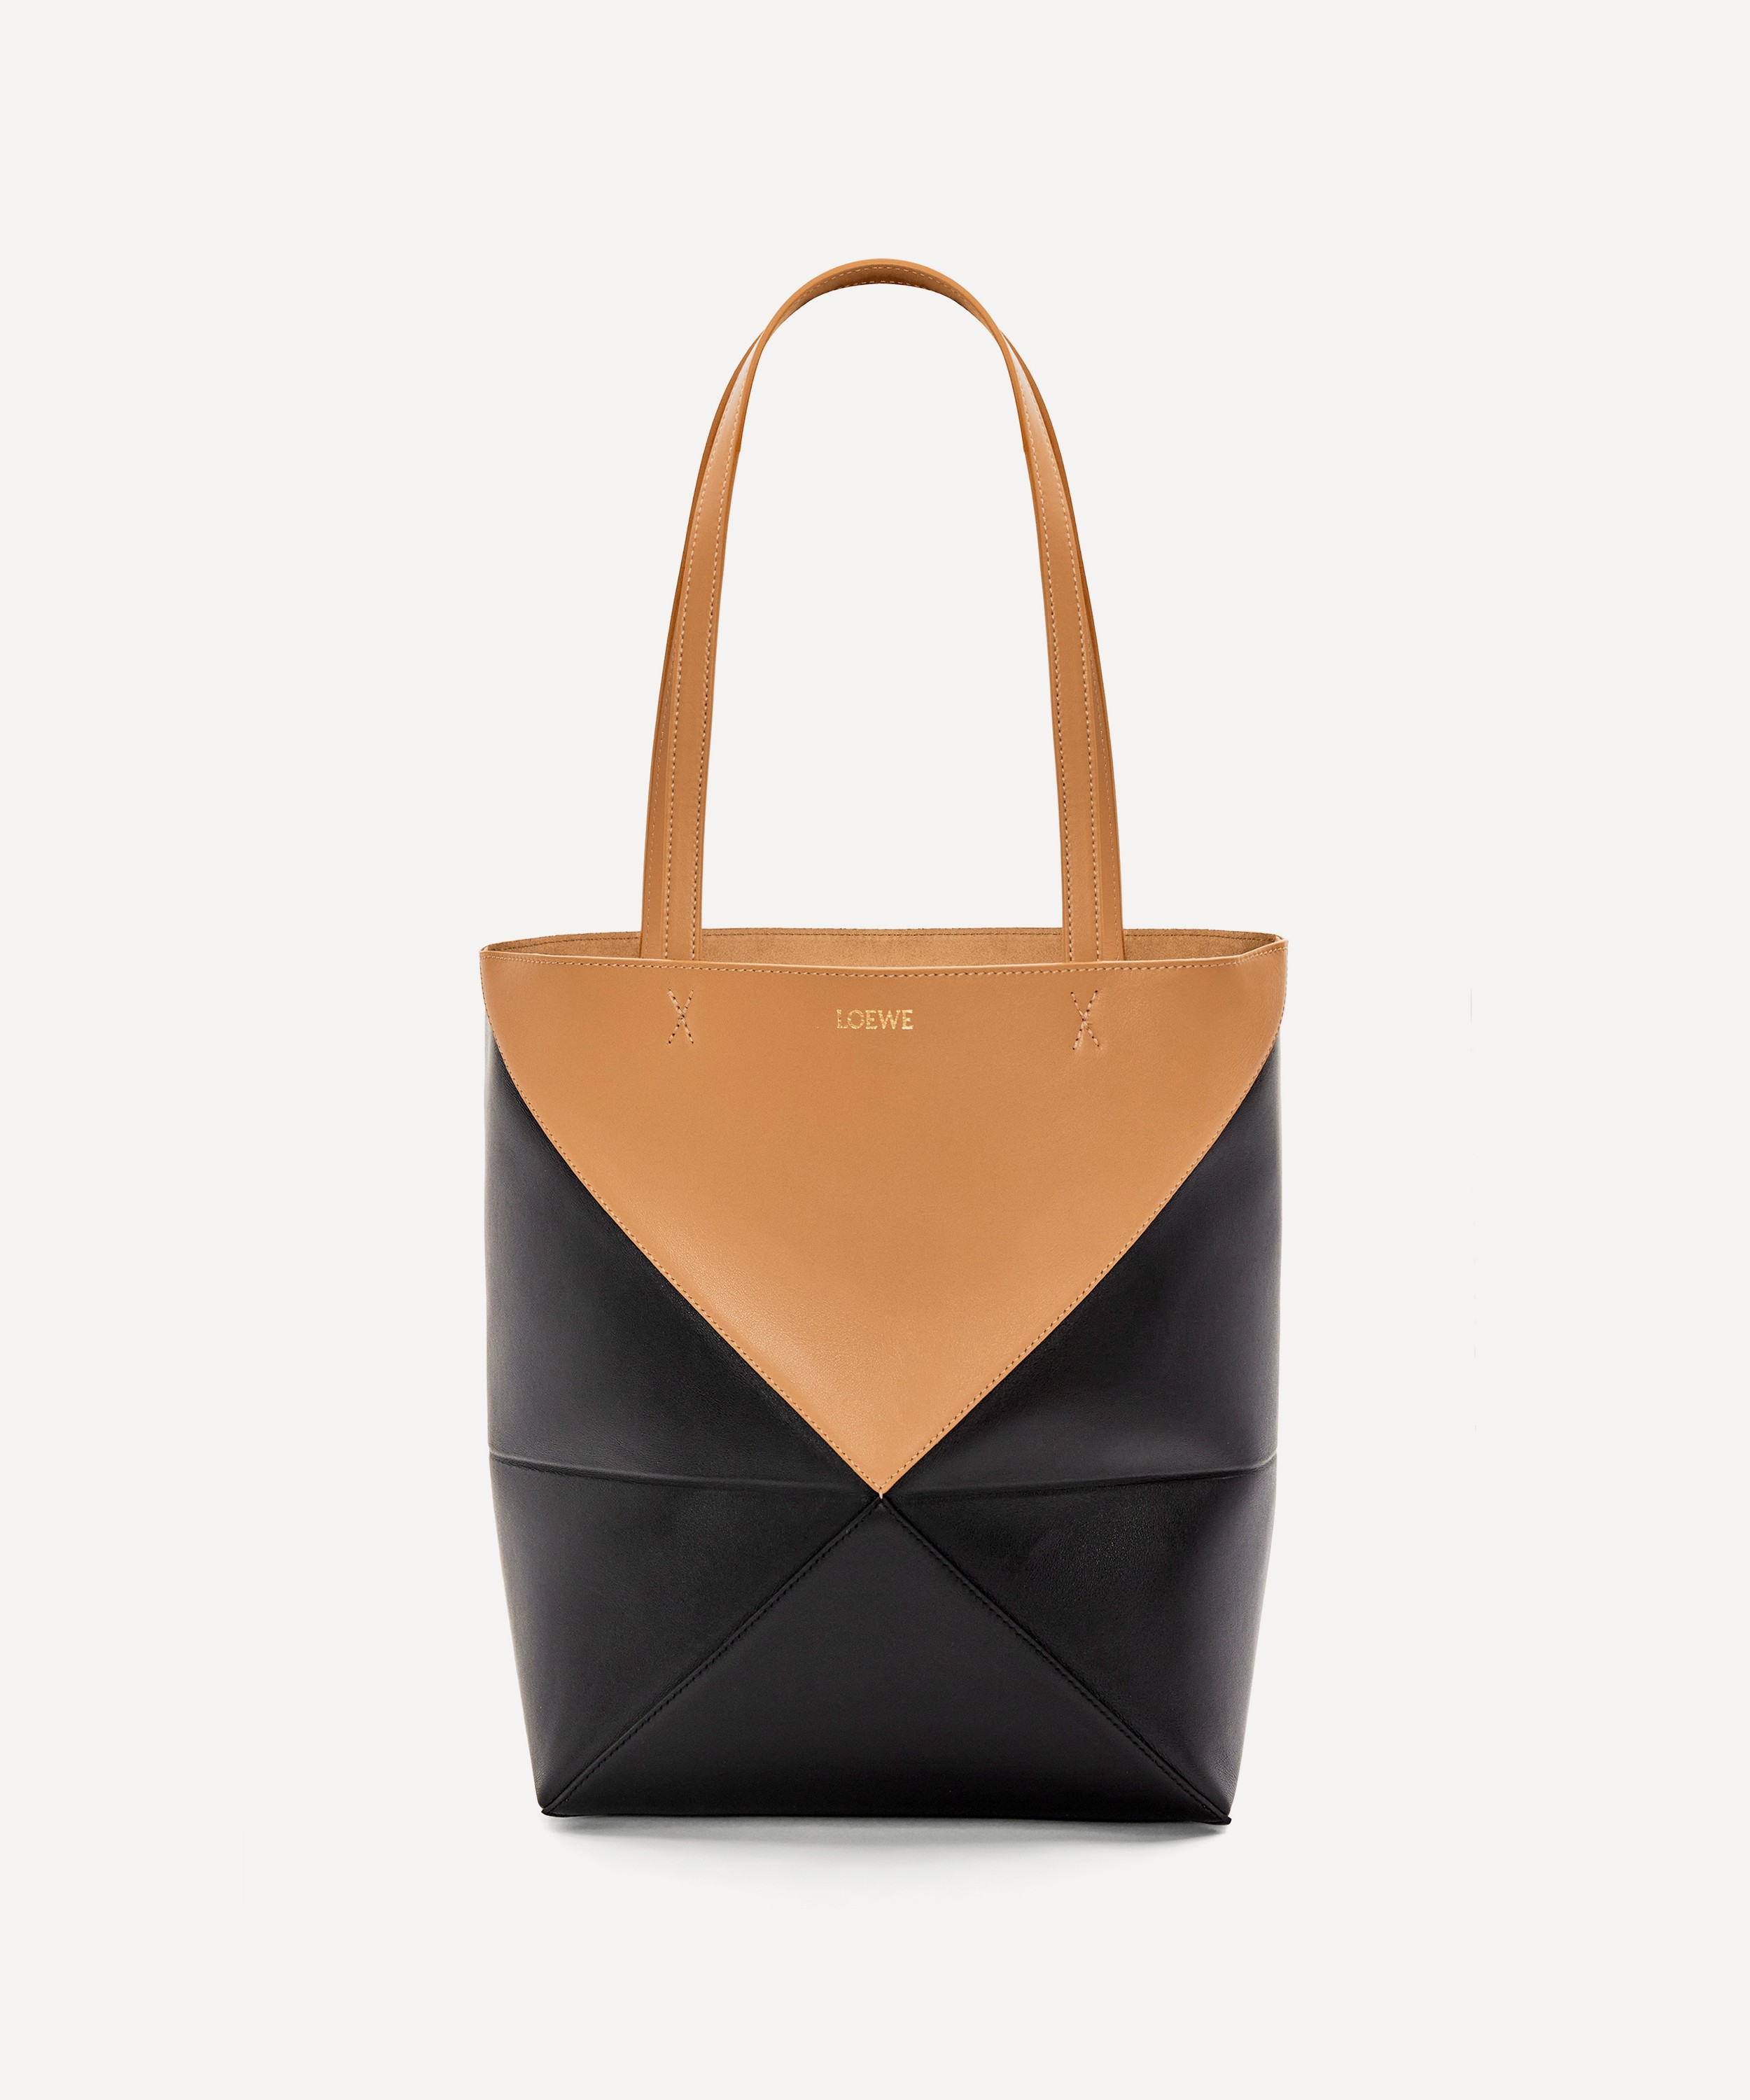 Loewe Women's Goya Puffer Bag in Pleated Leather - Black - Shoulder Bags